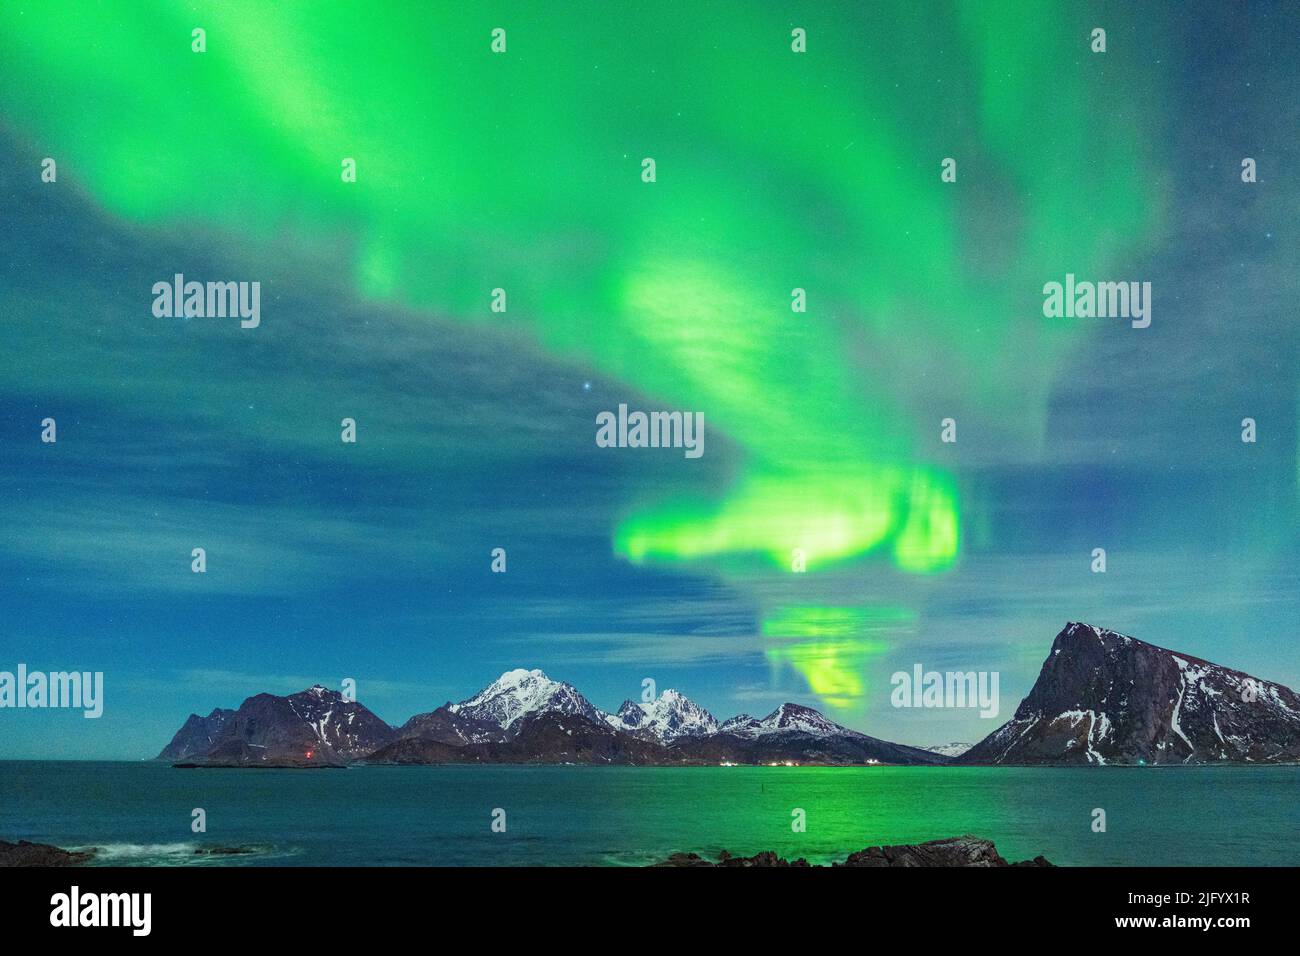 Luces verdes brillantes de Aurora Borealis (aurora boreal) que se reflejan en el mar, Myrland, Leknes, Vestvagoy, Lofoten Islas, Noruega, Escandinavia Foto de stock